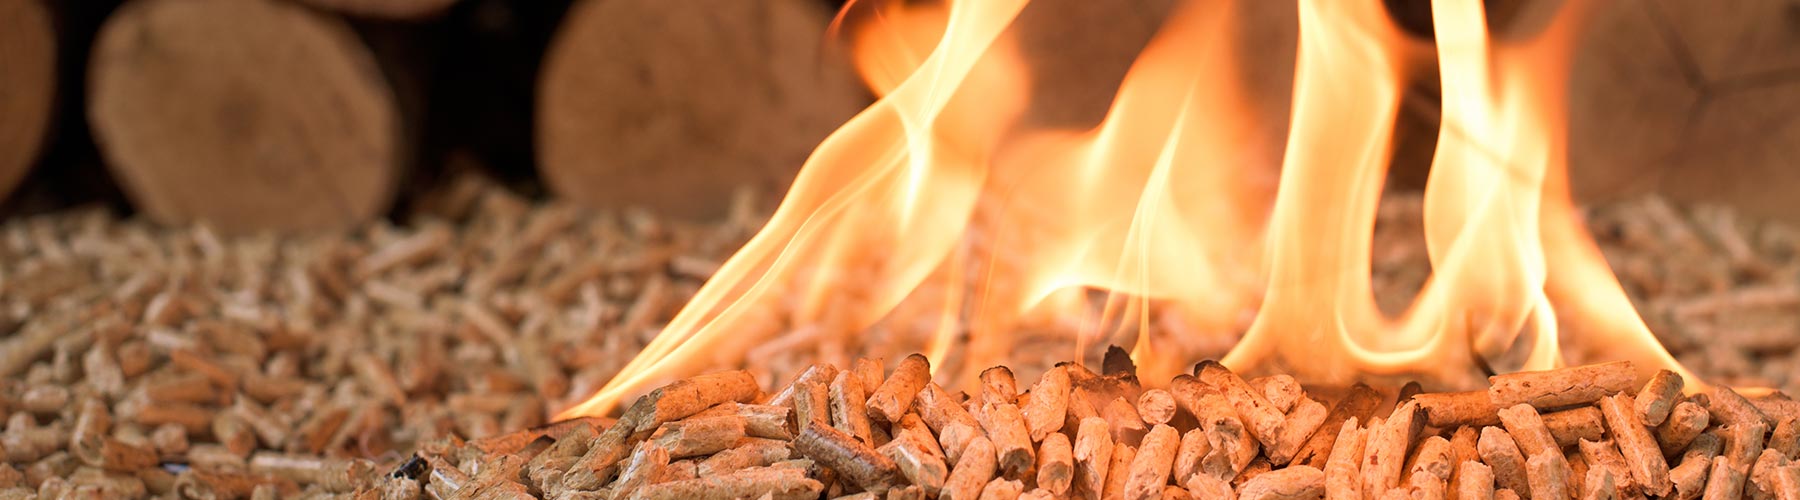 Coniferous wood pellets in flames